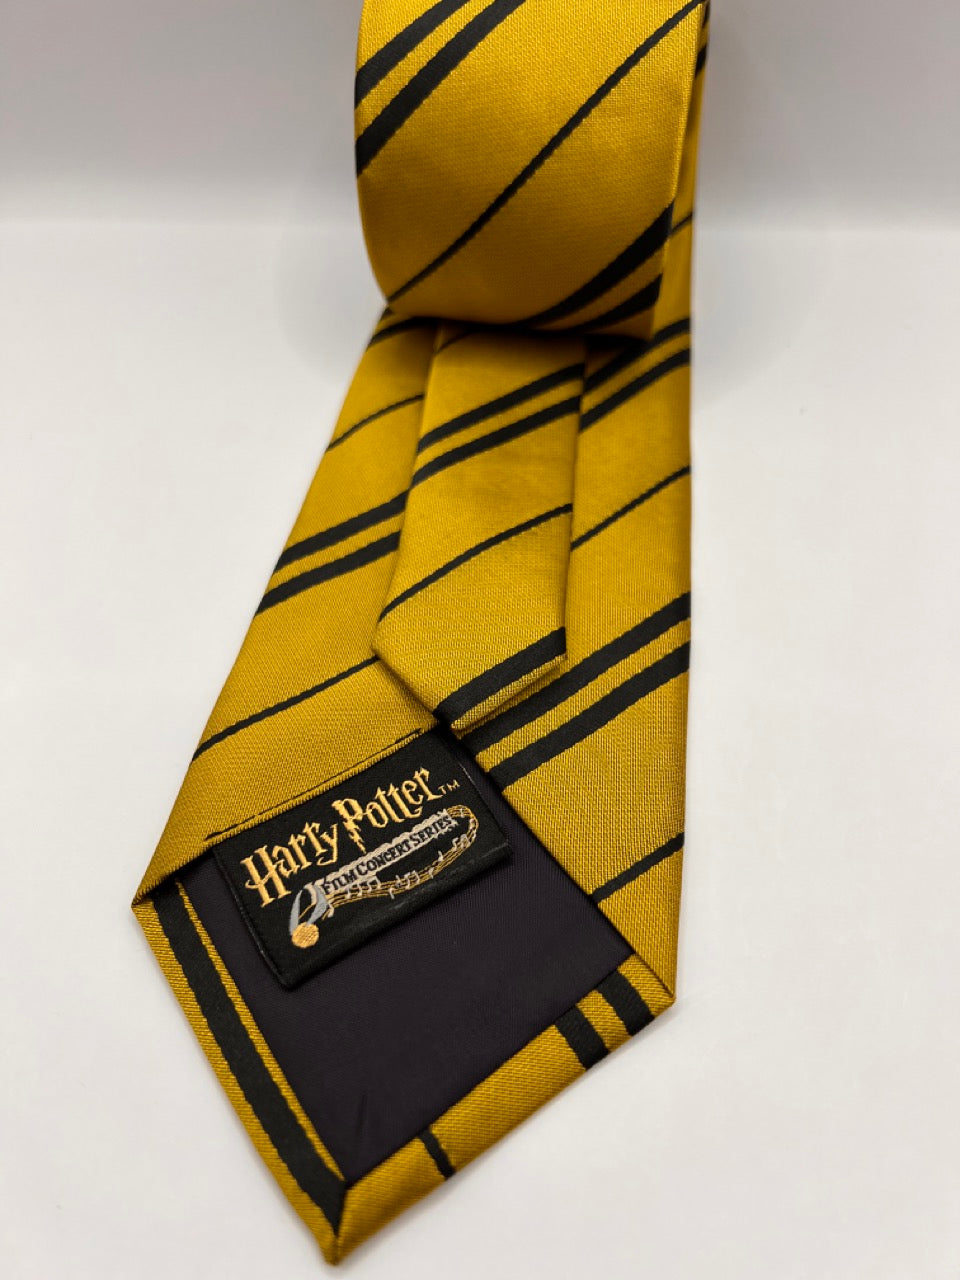 Premium Harry Potter Tie Striped House Crest Necktie Neckwear Tie